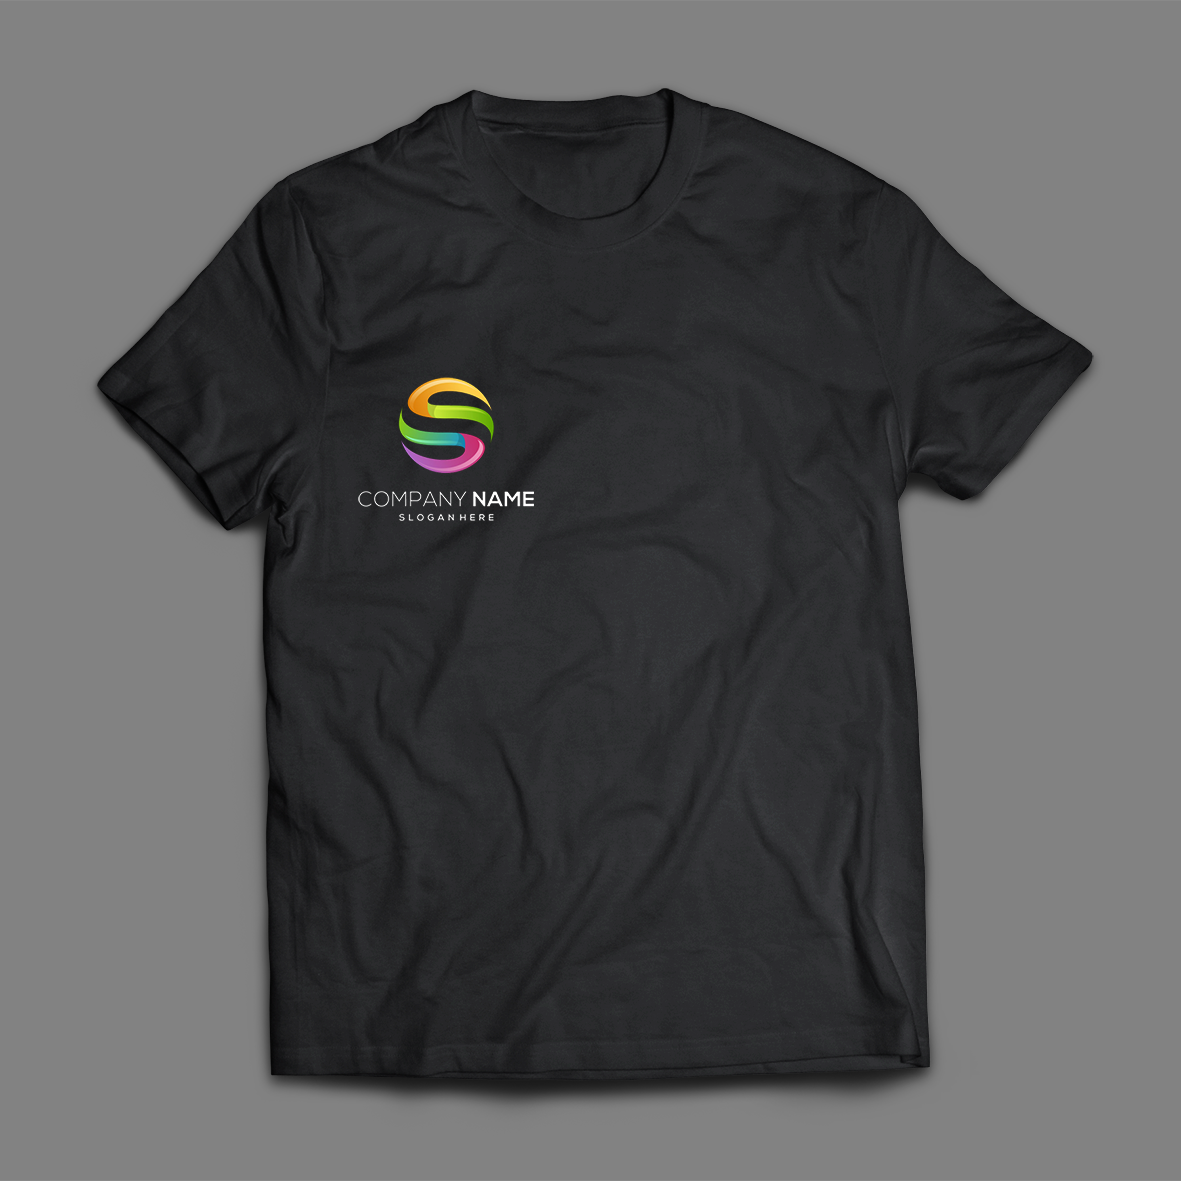 Полноцветная печать на футболке (формат А6)